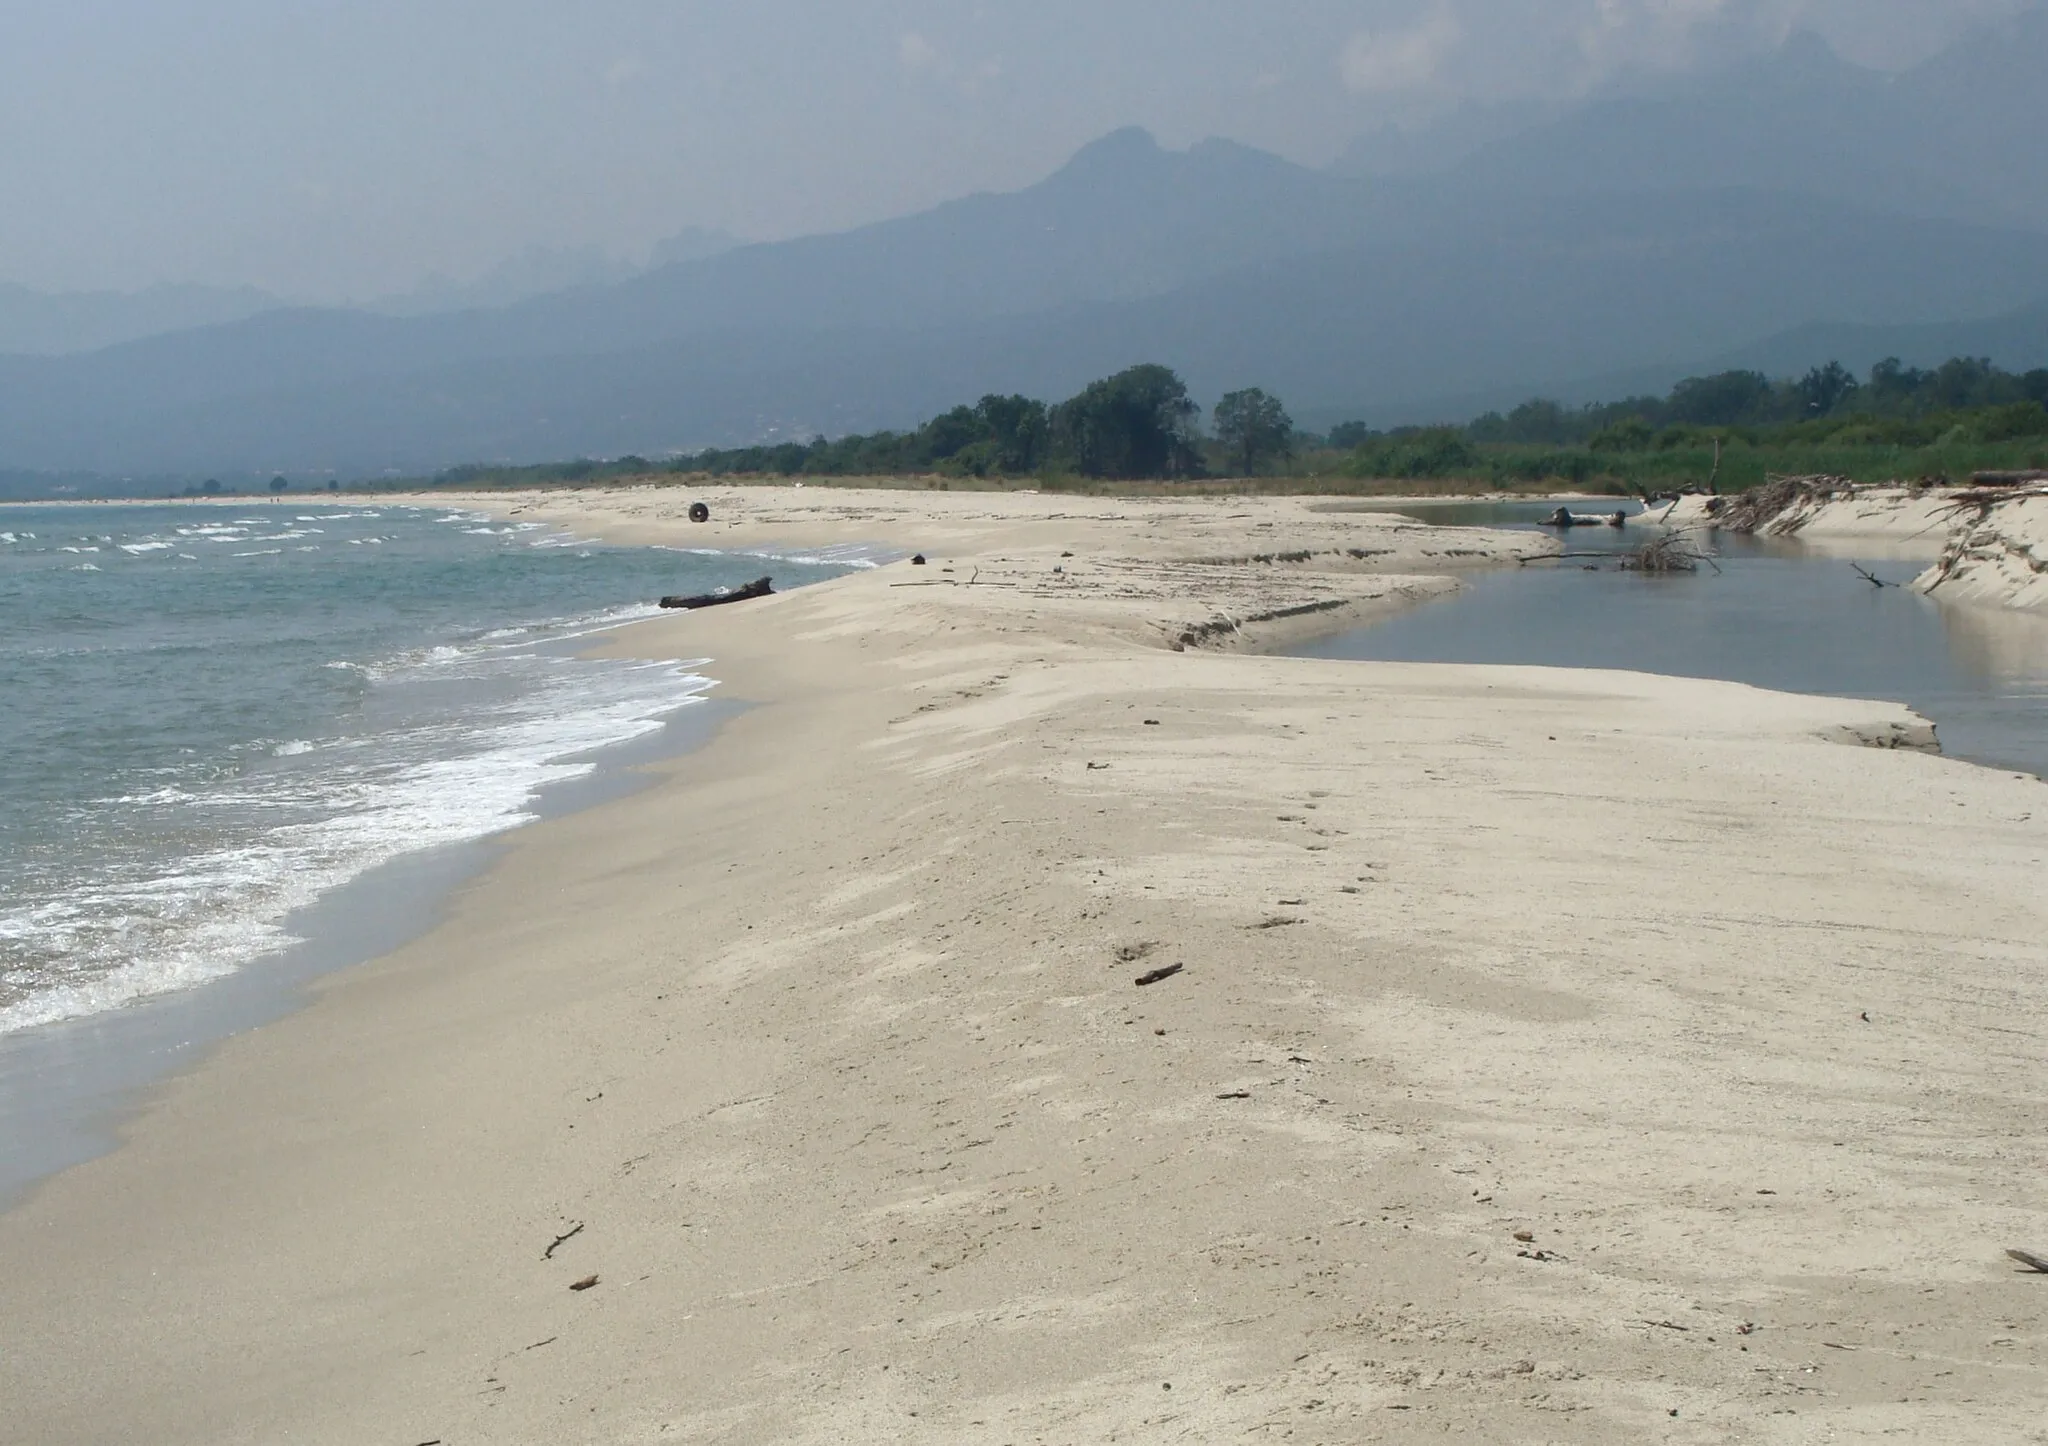 Photo showing: A son embouchure, l'Abatesco doit contourner un banc de sable qui le sépare de la mer (état des lieux été 2013, susceptible de modifications dues aux intempéries, fréquentes).